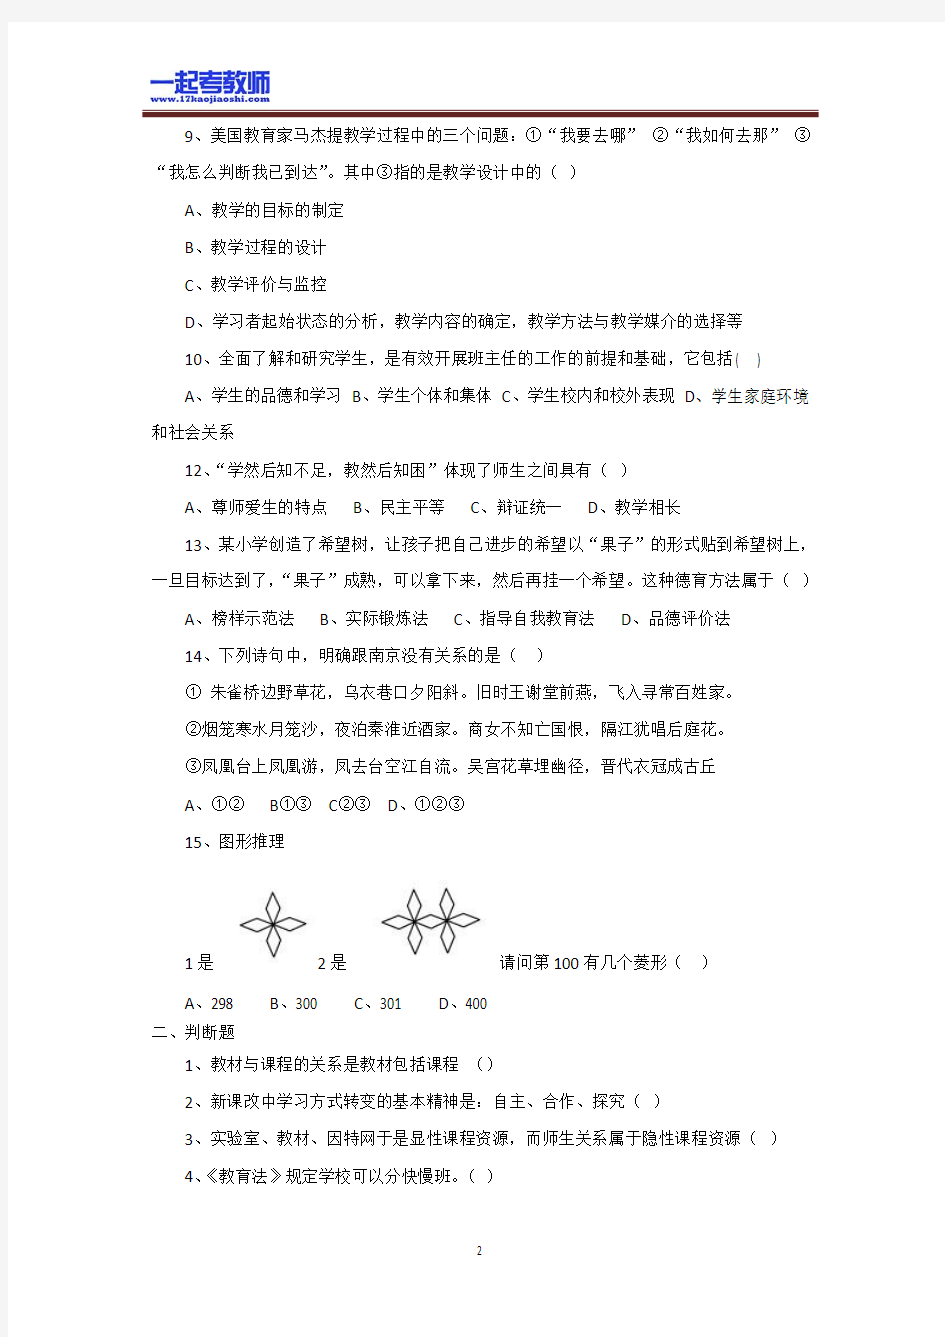 2011年 江苏 南京 教师招聘考试 笔试 教育综合 真题答案解析